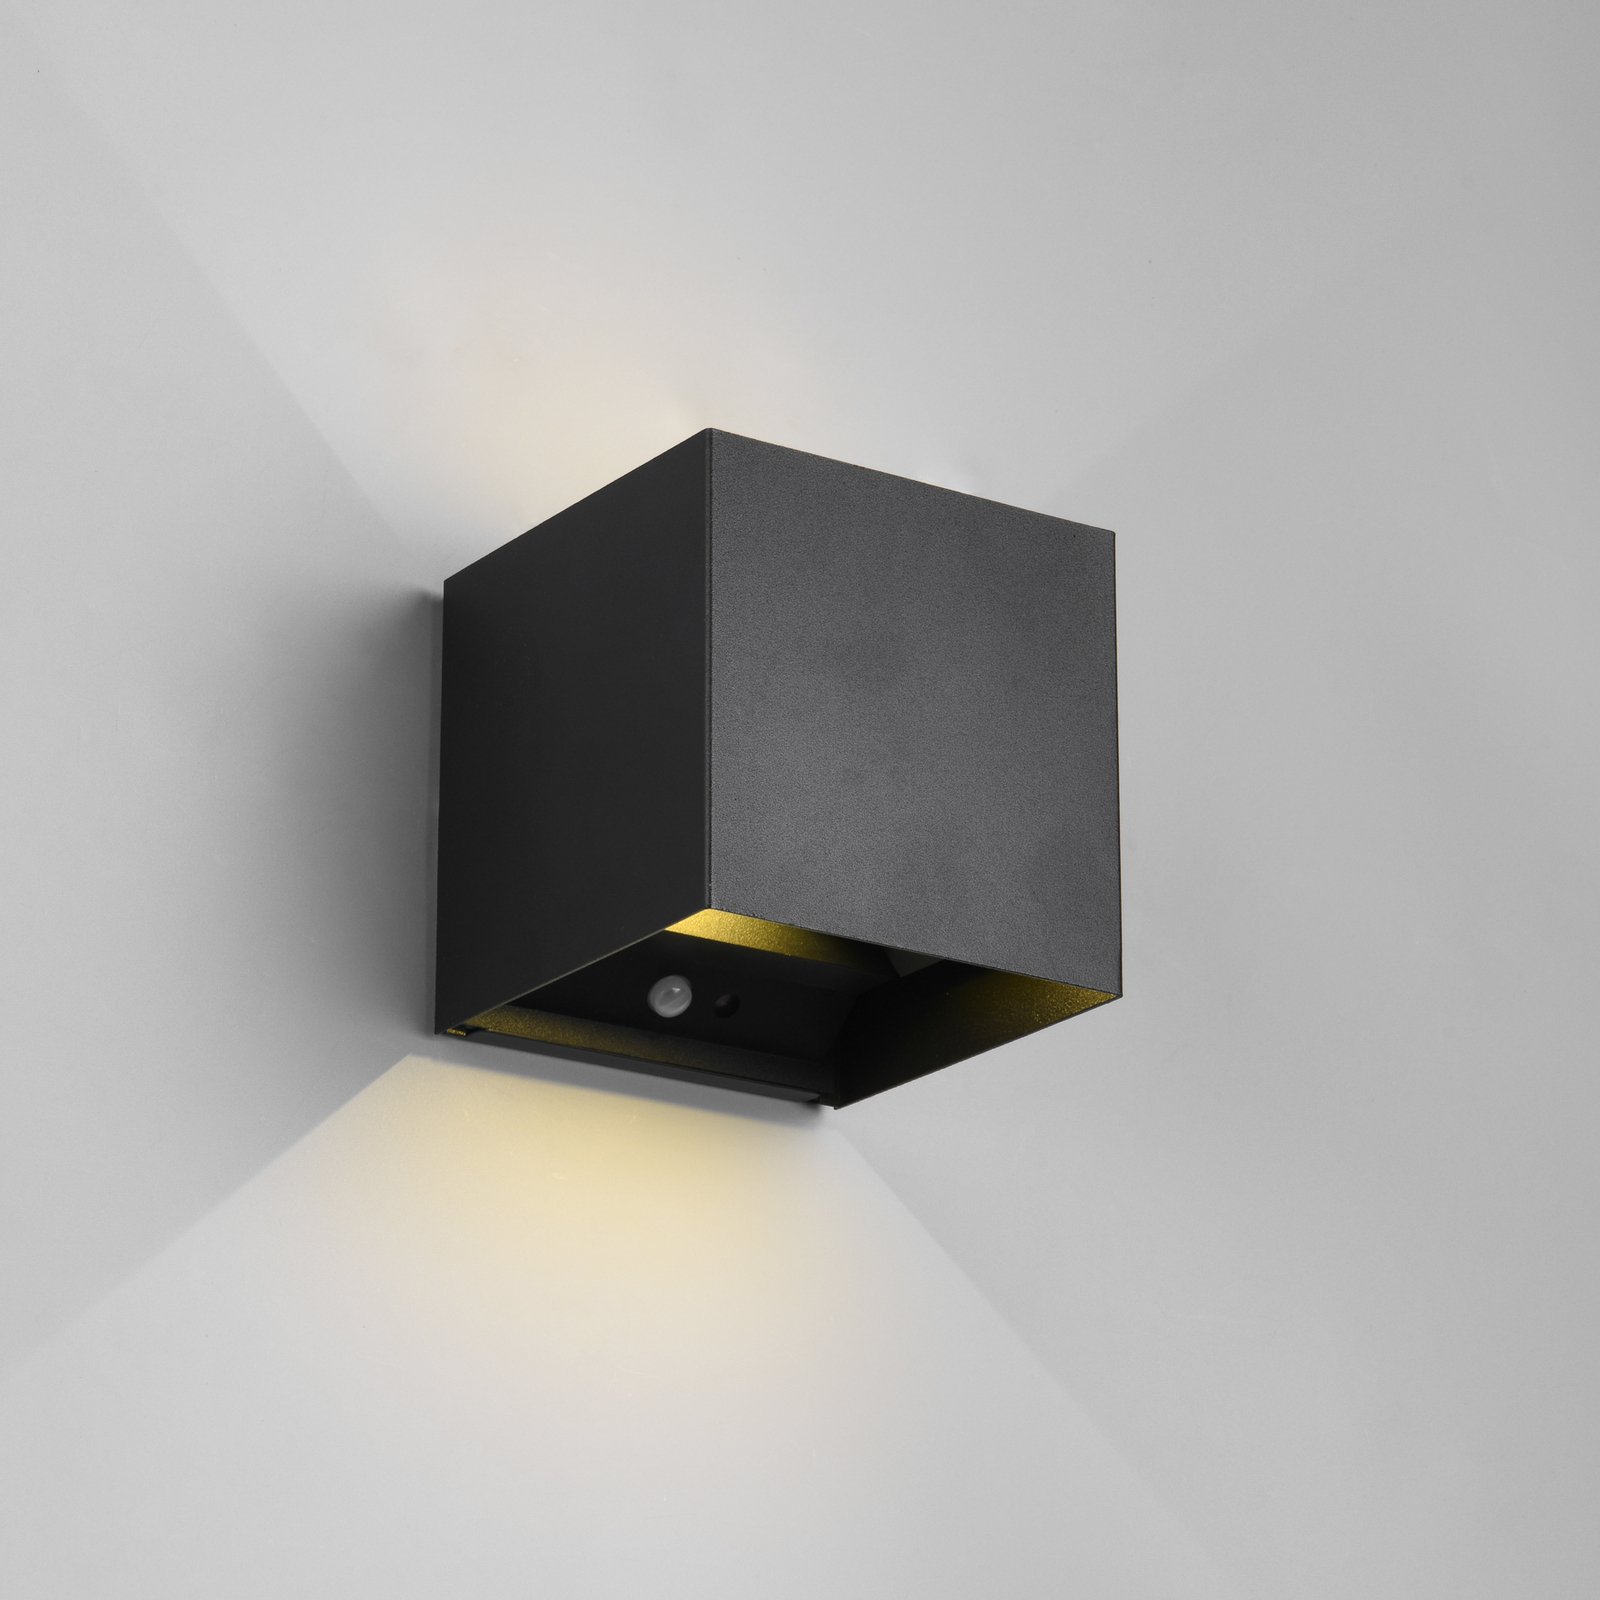 LED įkraunamas lauko sieninis šviestuvas "Talent", juodas, plotis 10 cm